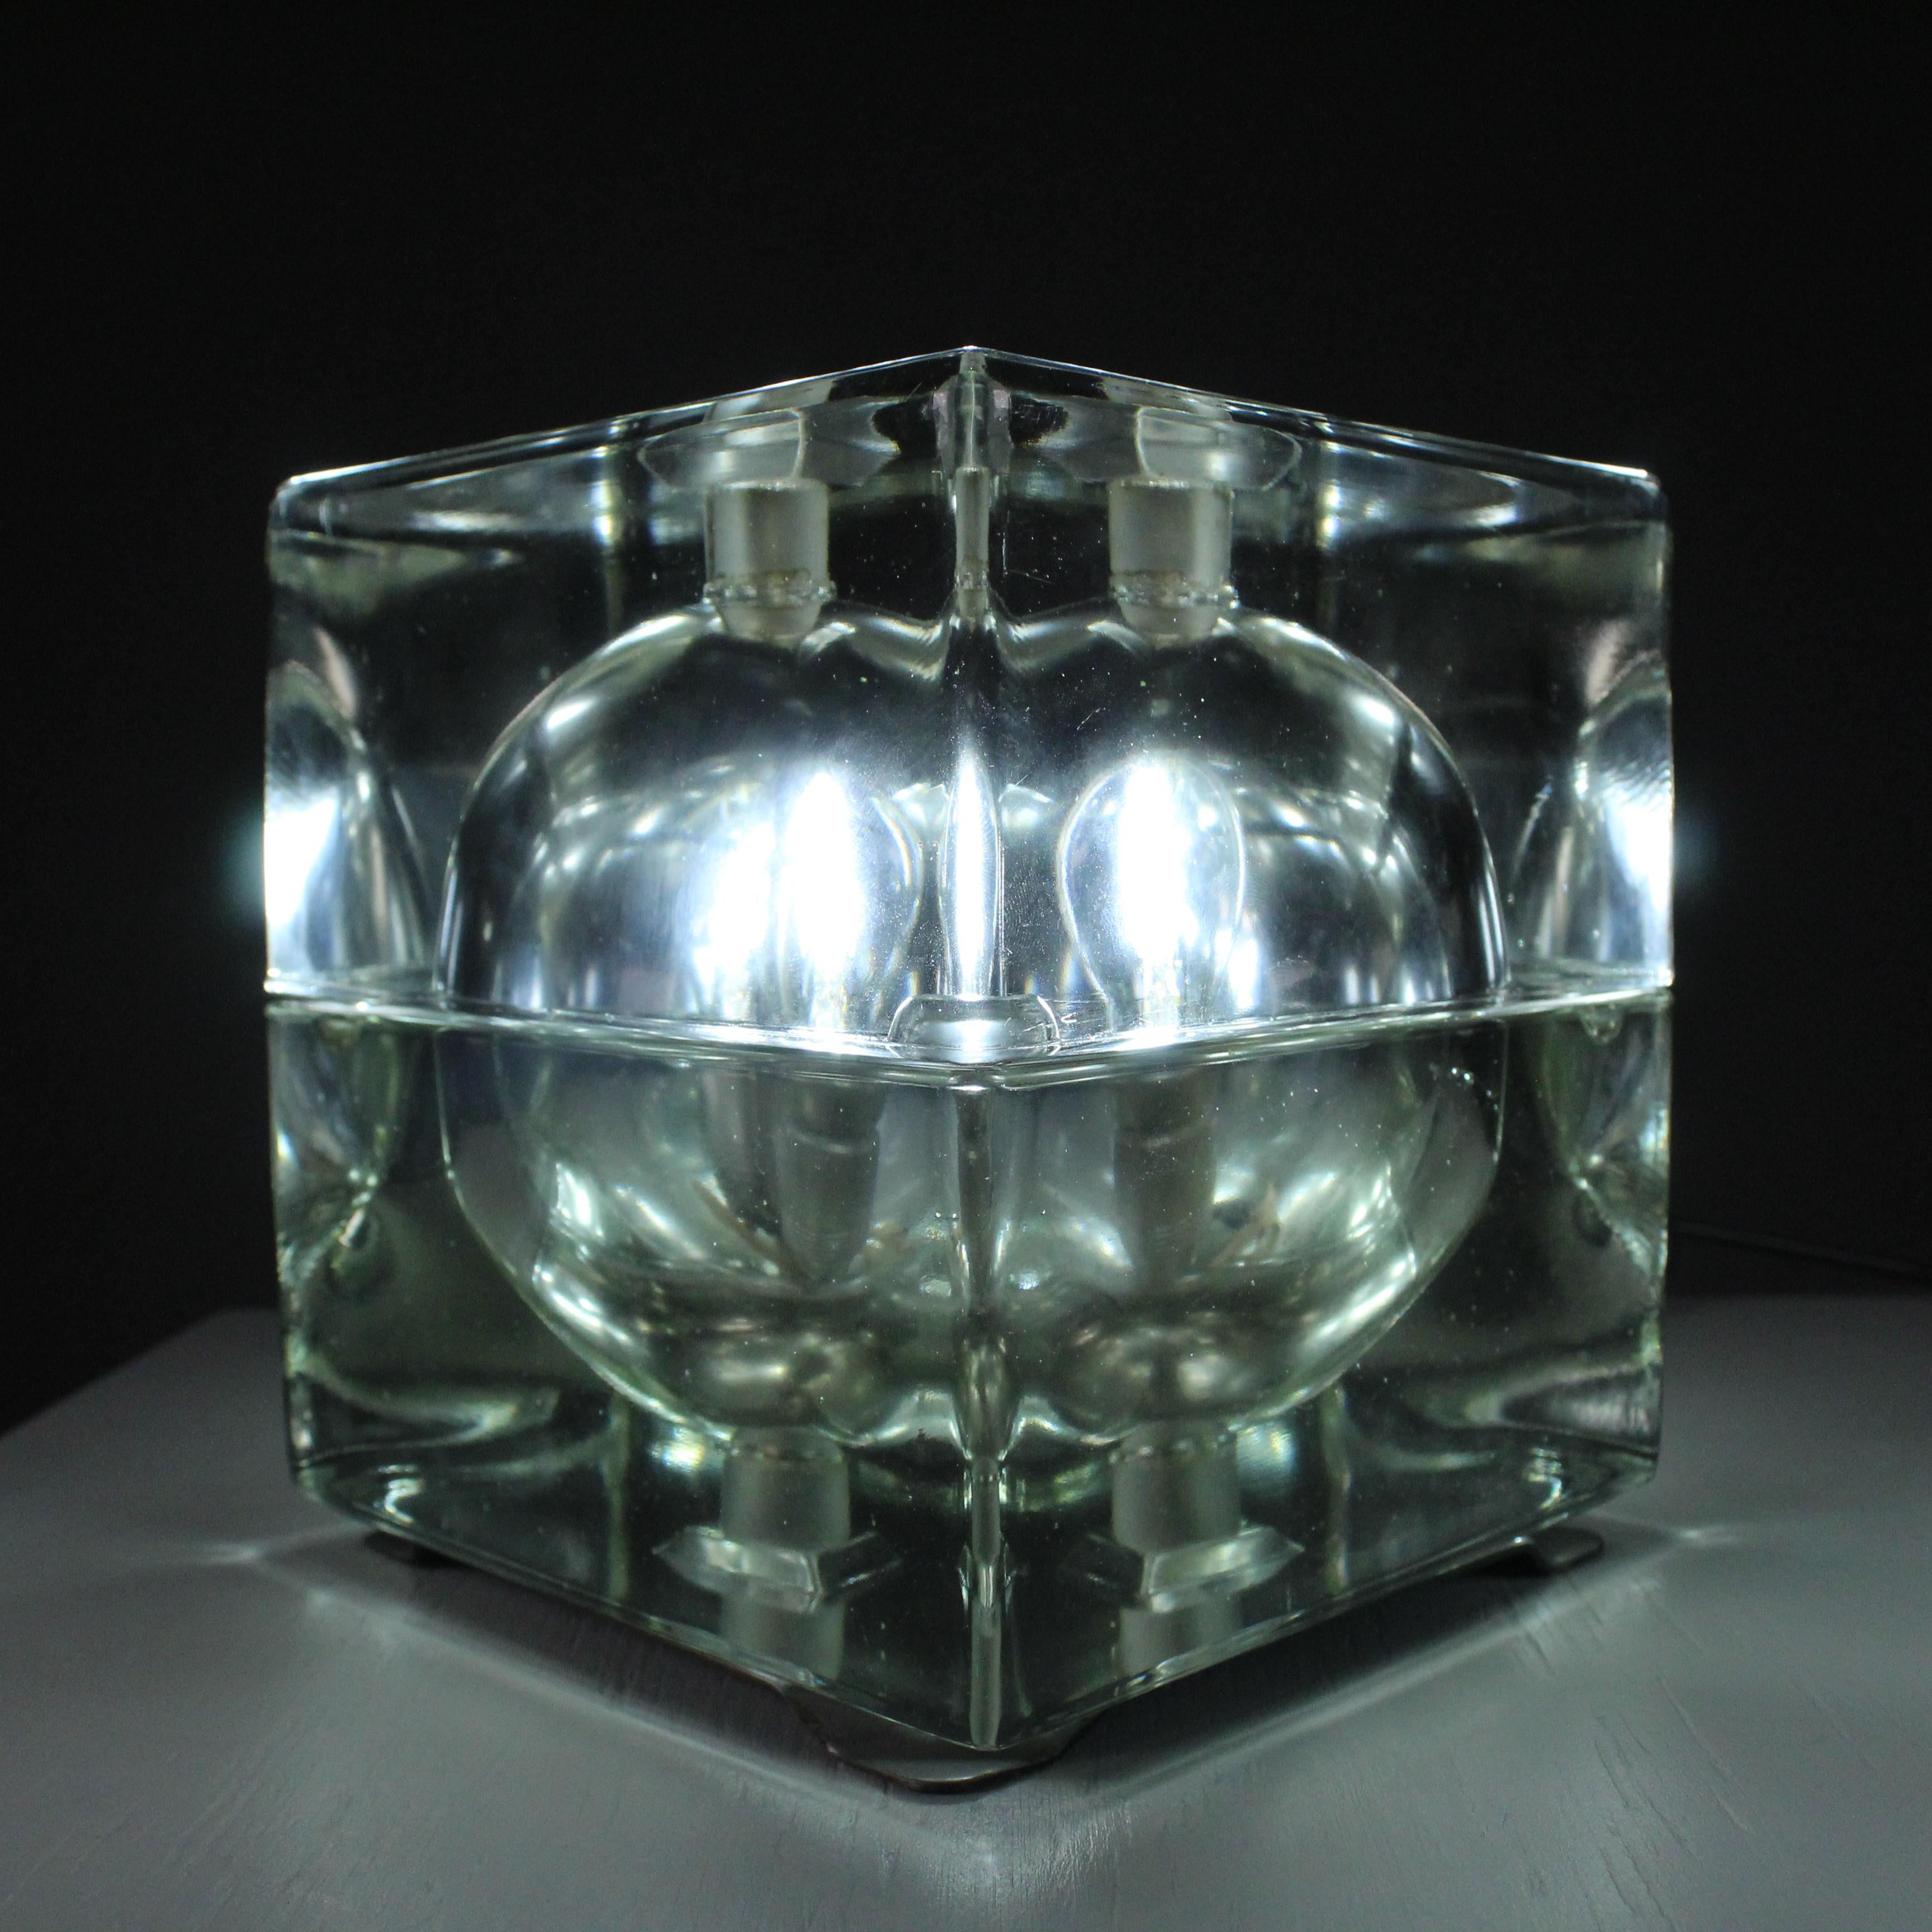 Die Cubosfera-Lampe ist ein bemerkenswertes Design, das 1980 von dem italienischen Architekten und Designer Alessandro Mendini entworfen wurde. Diese ikonische Lampe präsentiert eine ferne Form, die aus verschiedenfarbigen Quadraten zusammengesetzt